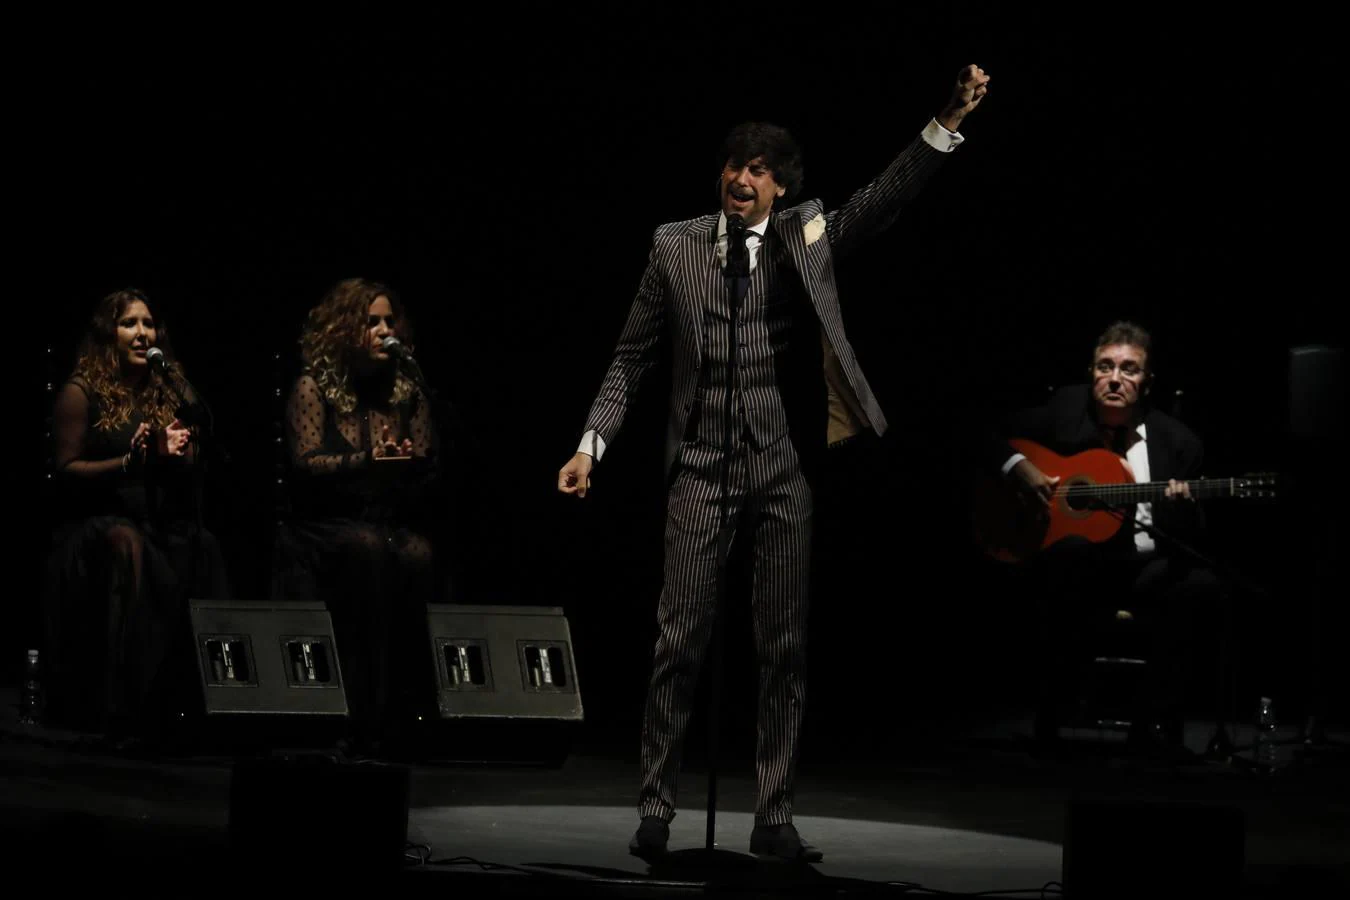 El concierto de Manuel Lombo en Córdoba, en imágenes